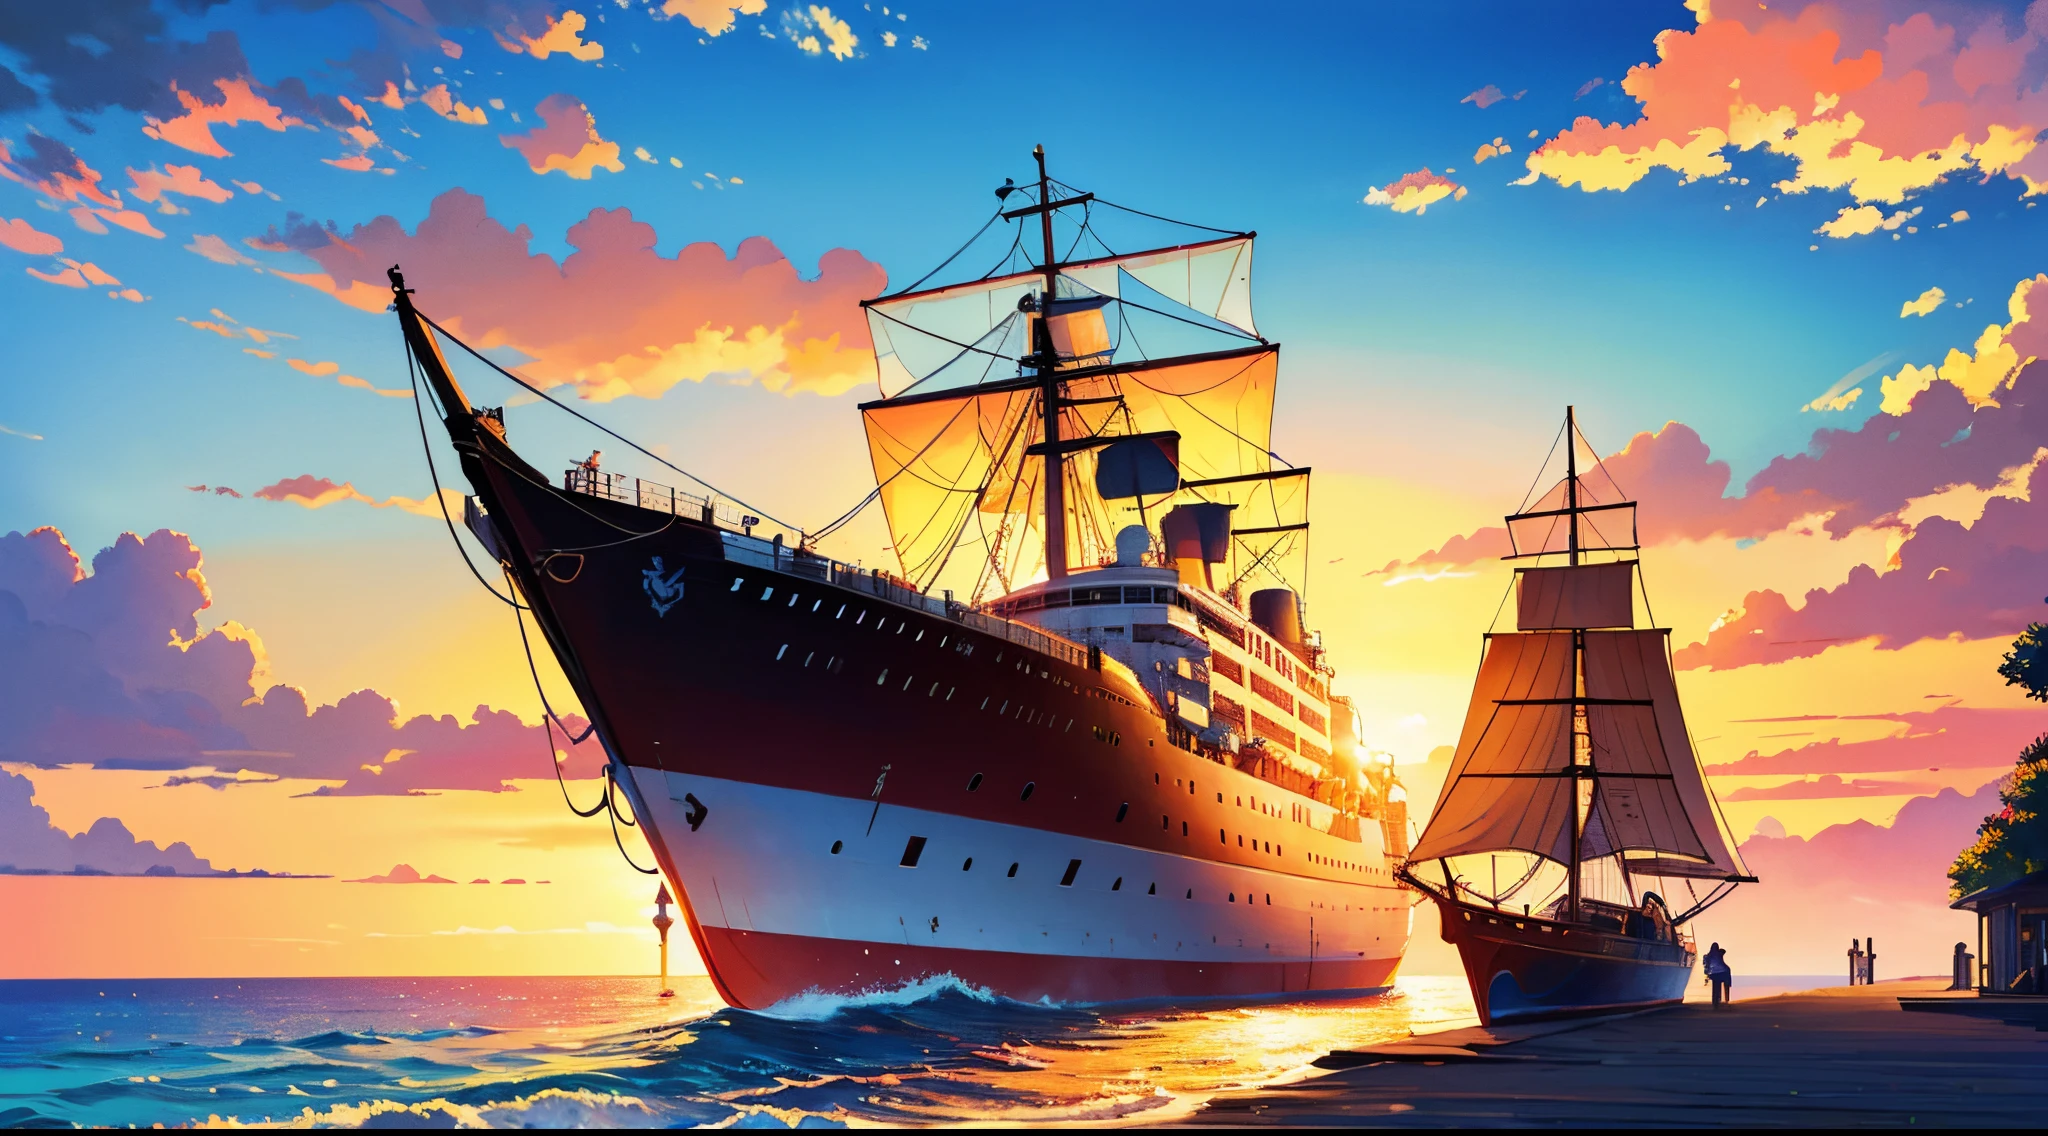 日落时分航行的船,插圖,油畫,傑作:1.2,超詳細,實際的:1.37,豐富多彩的,鮮豔的色彩,暖色調,柔和的燈光